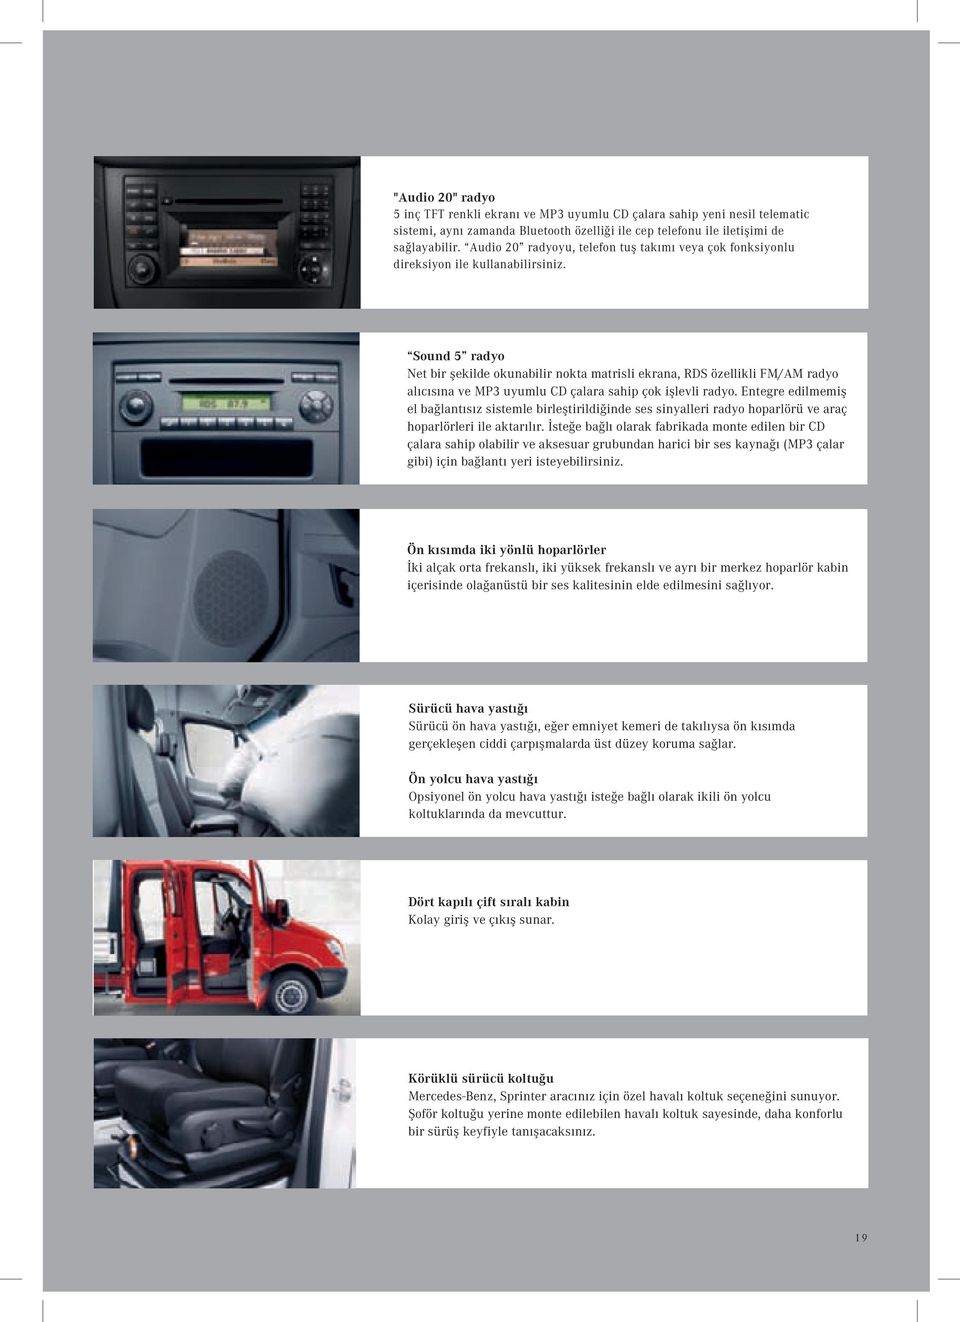 Sound 5 radyo Net bir şekilde okunabilir nokta matrisli ekrana, RDS özellikli FM/AM radyo alıcısına ve MP3 uyumlu CD çalara sahip çok işlevli radyo.